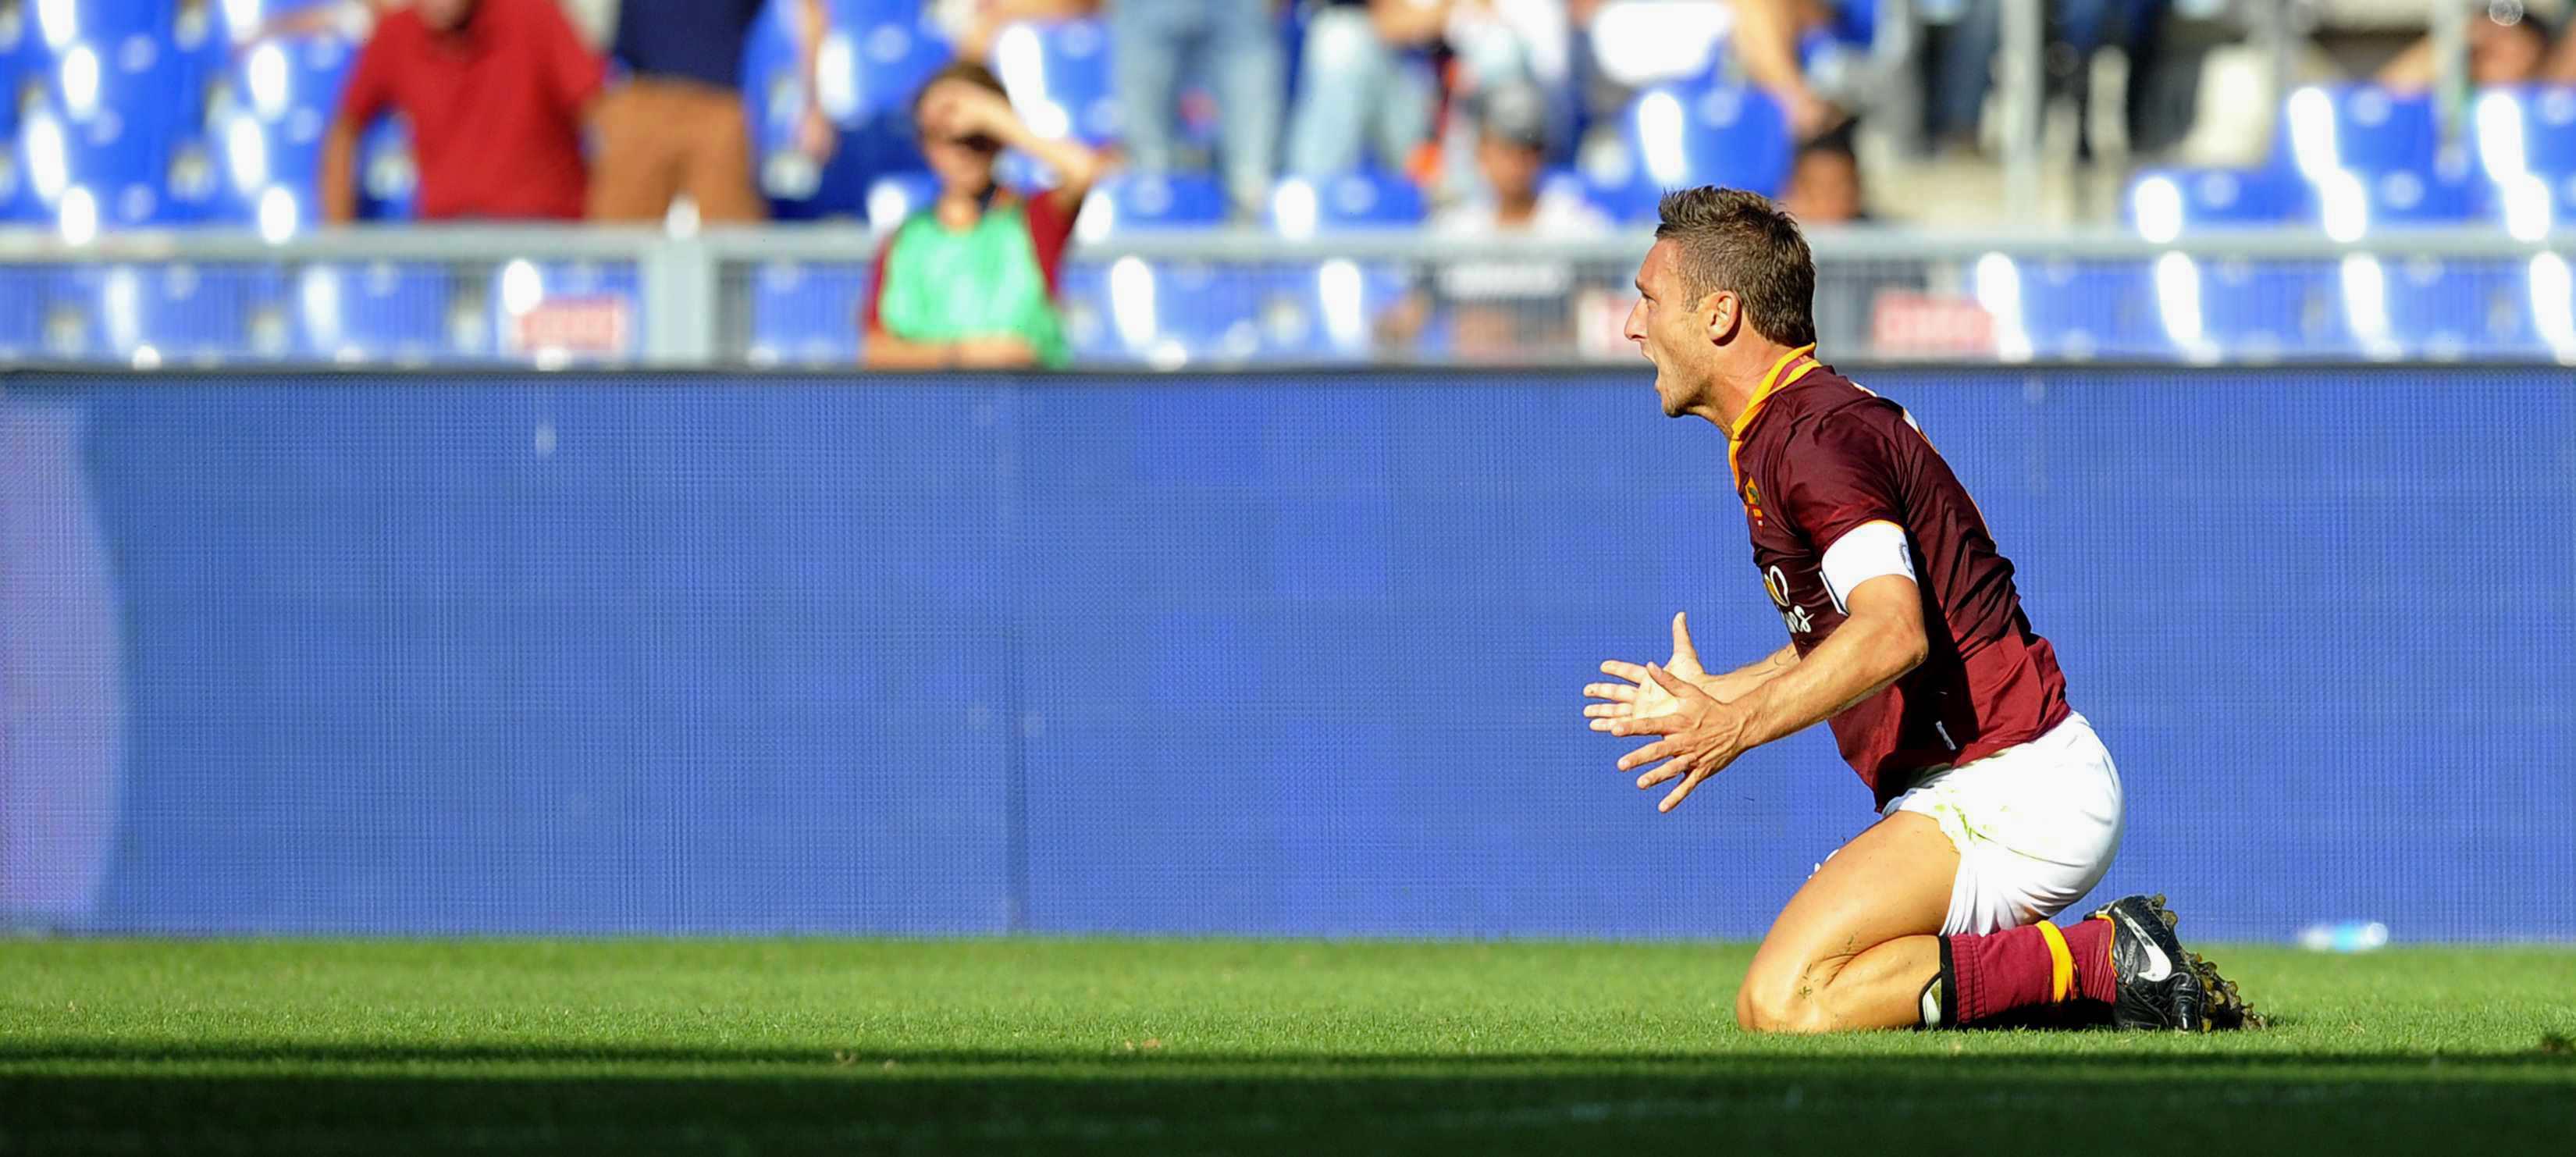 L'incredulità di Francesco Totti - Infophoto